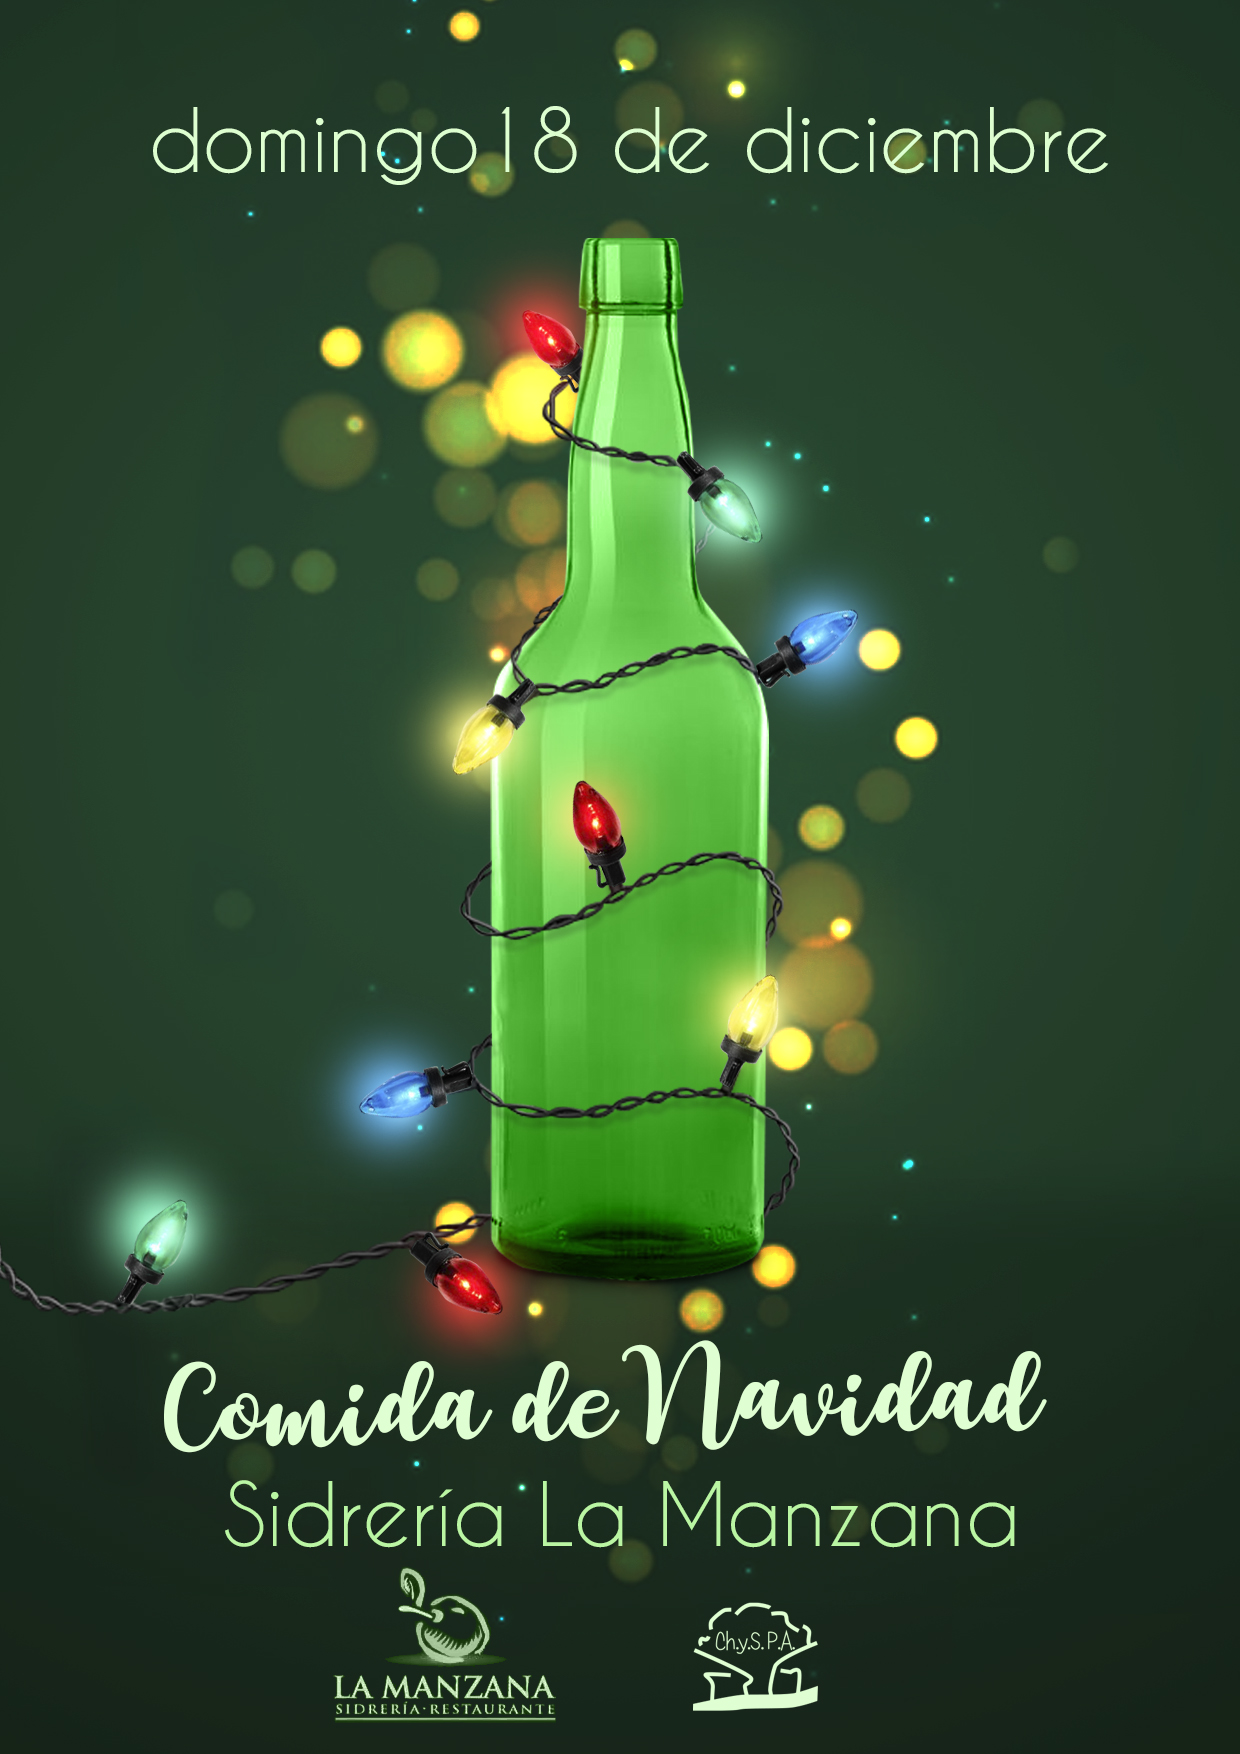 El domingo 18 de diciembre de 2022, celebramos nuestra comida de navidad en la Sidrería La Manzana - Oviedo.